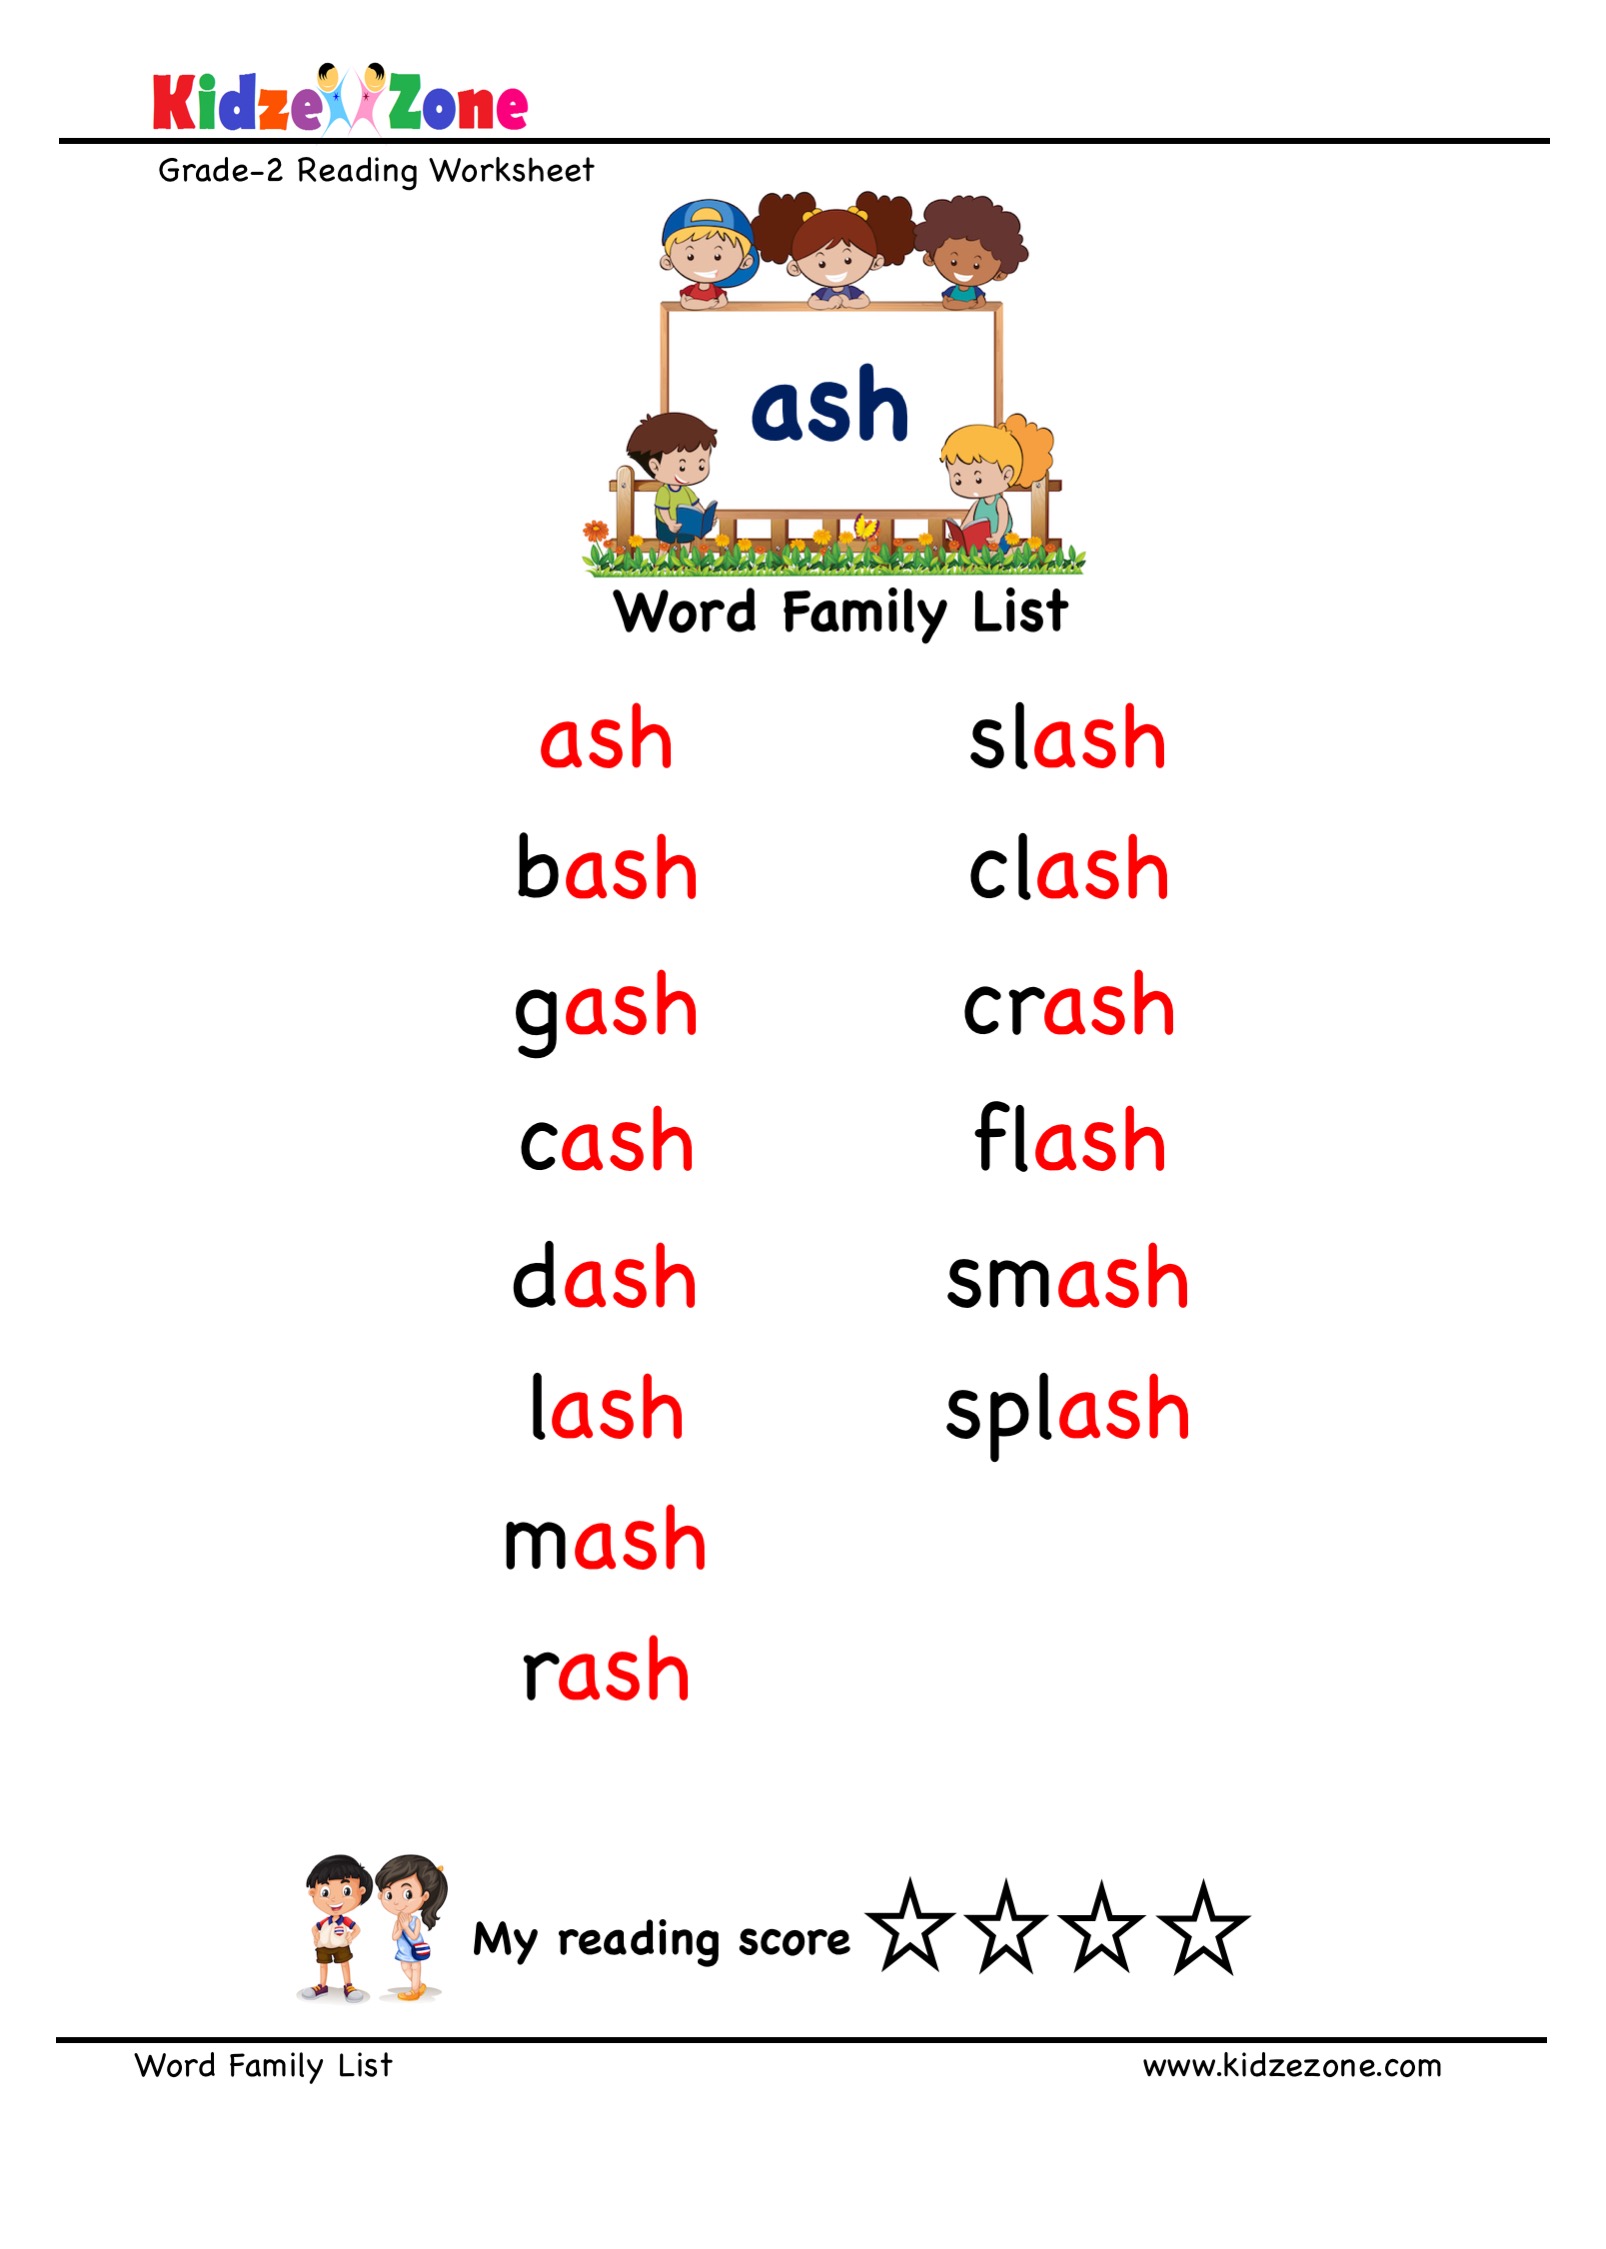 Five Letter Words Ending In Ash